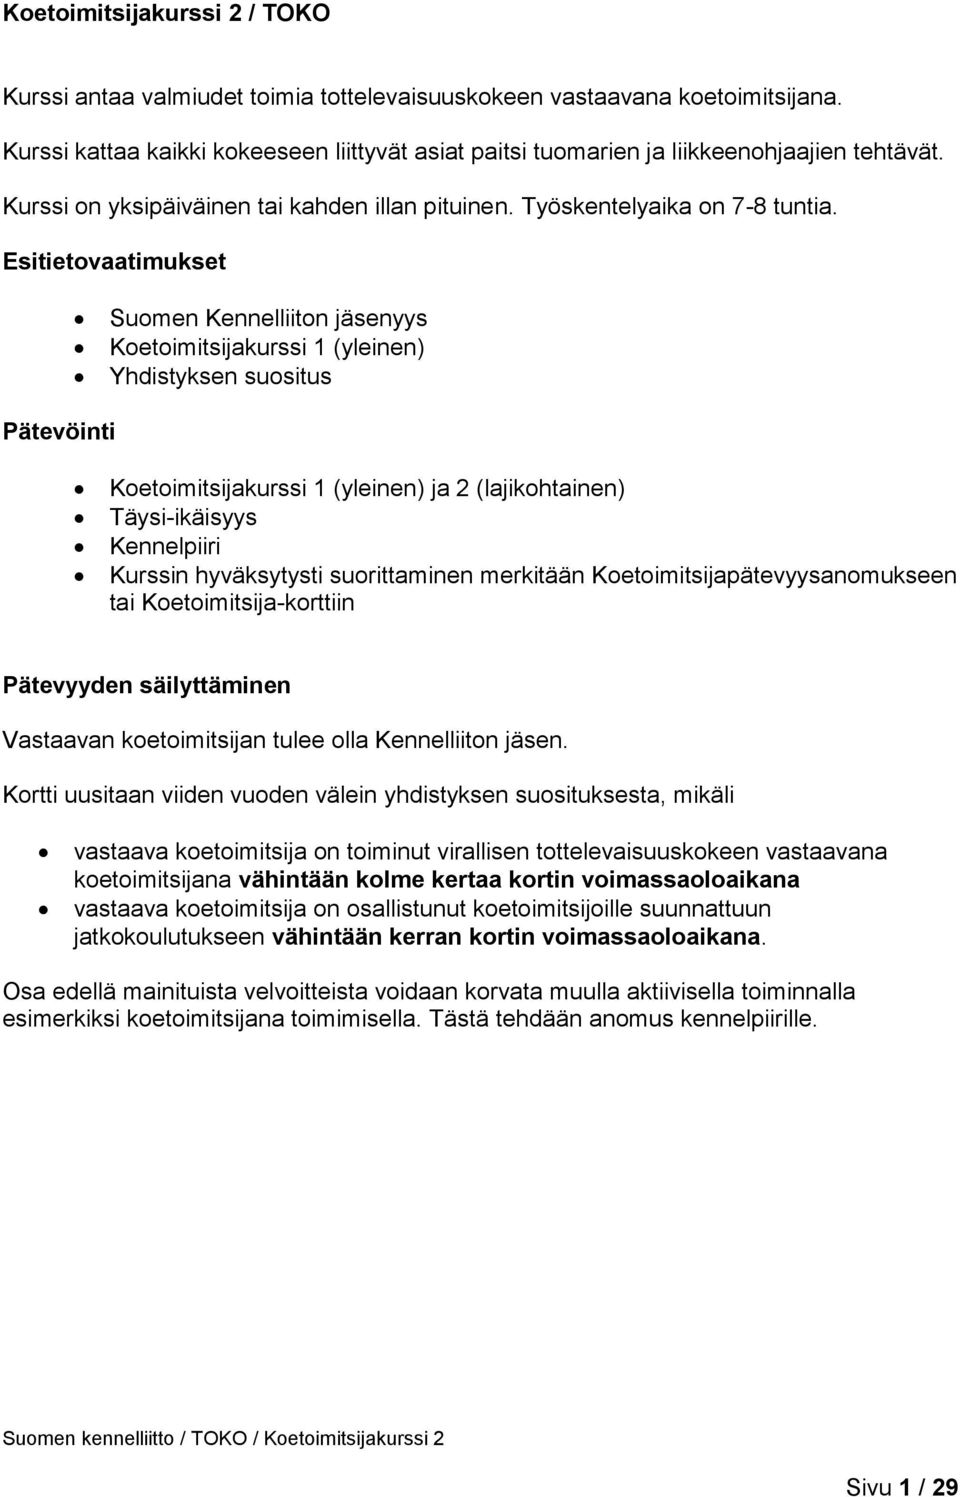 Esitietovaatimukset Suomen Kennelliiton jäsenyys Koetoimitsijakurssi 1 (yleinen) Yhdistyksen suositus Pätevöinti Koetoimitsijakurssi 1 (yleinen) ja 2 (lajikohtainen) Täysi-ikäisyys Kennelpiiri